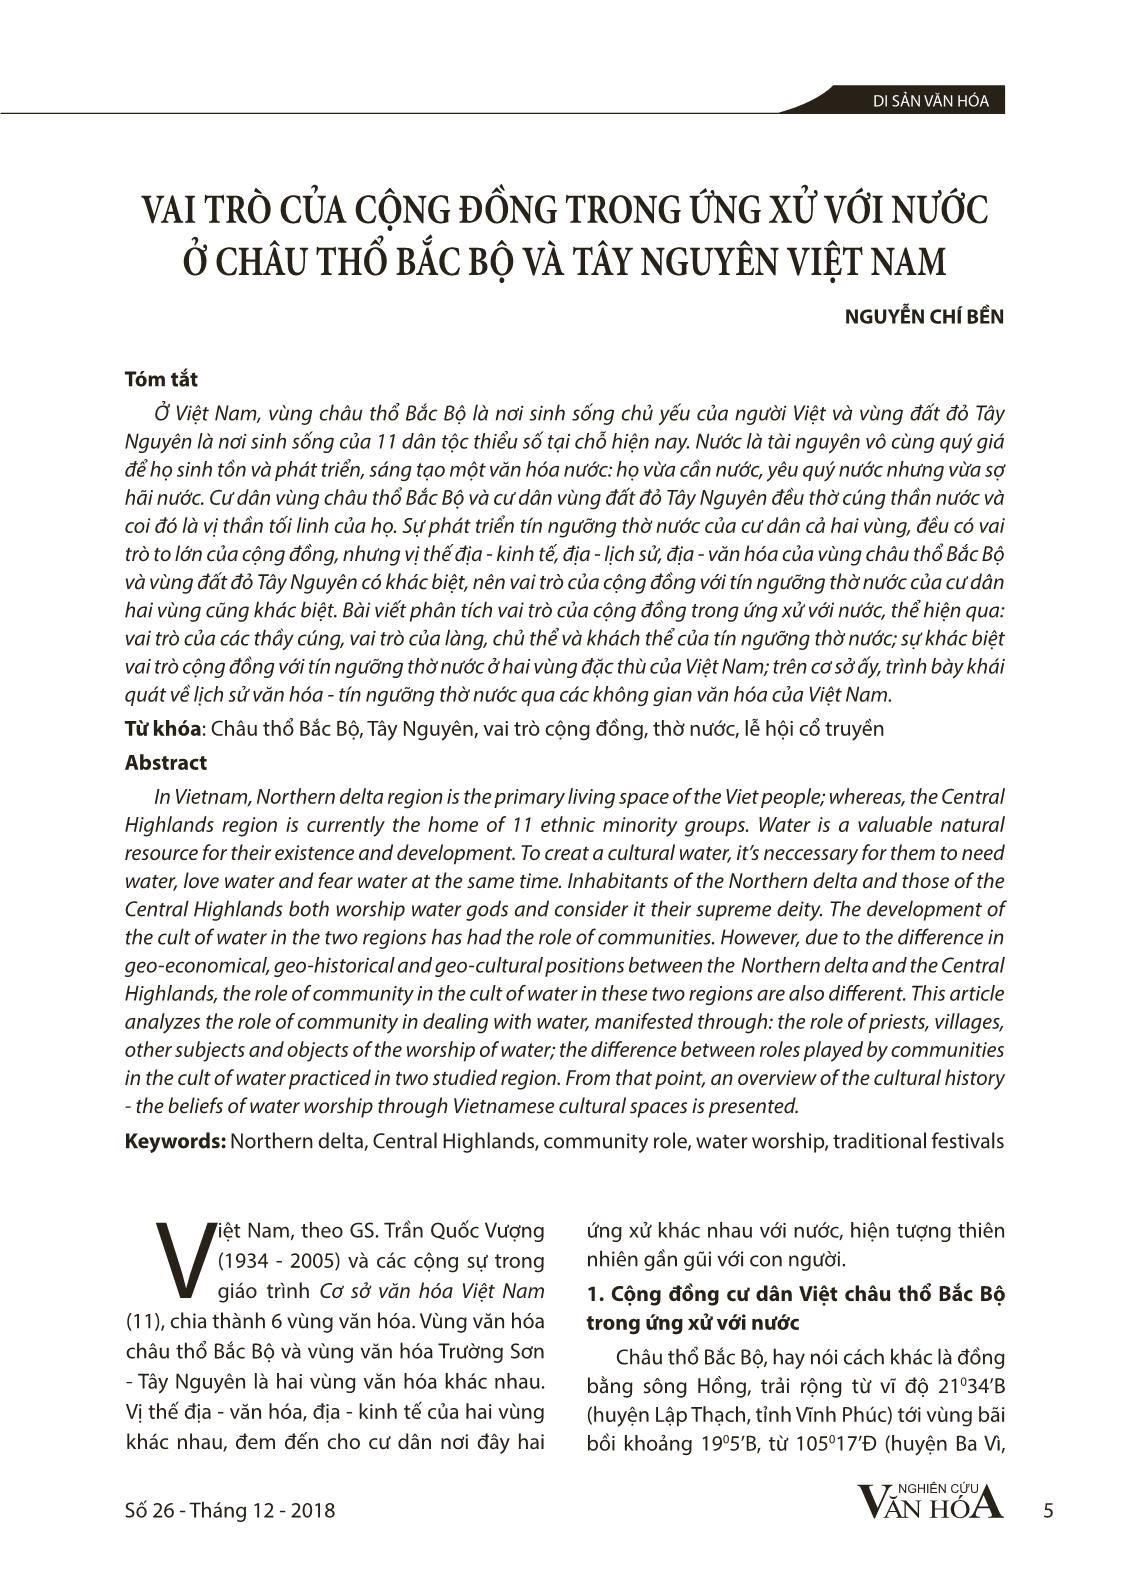 Vai trò của cộng đồng trong ứng xử với nước ở châu thổ Bắc Bộ và Tây Nguyên Việt Nam trang 1